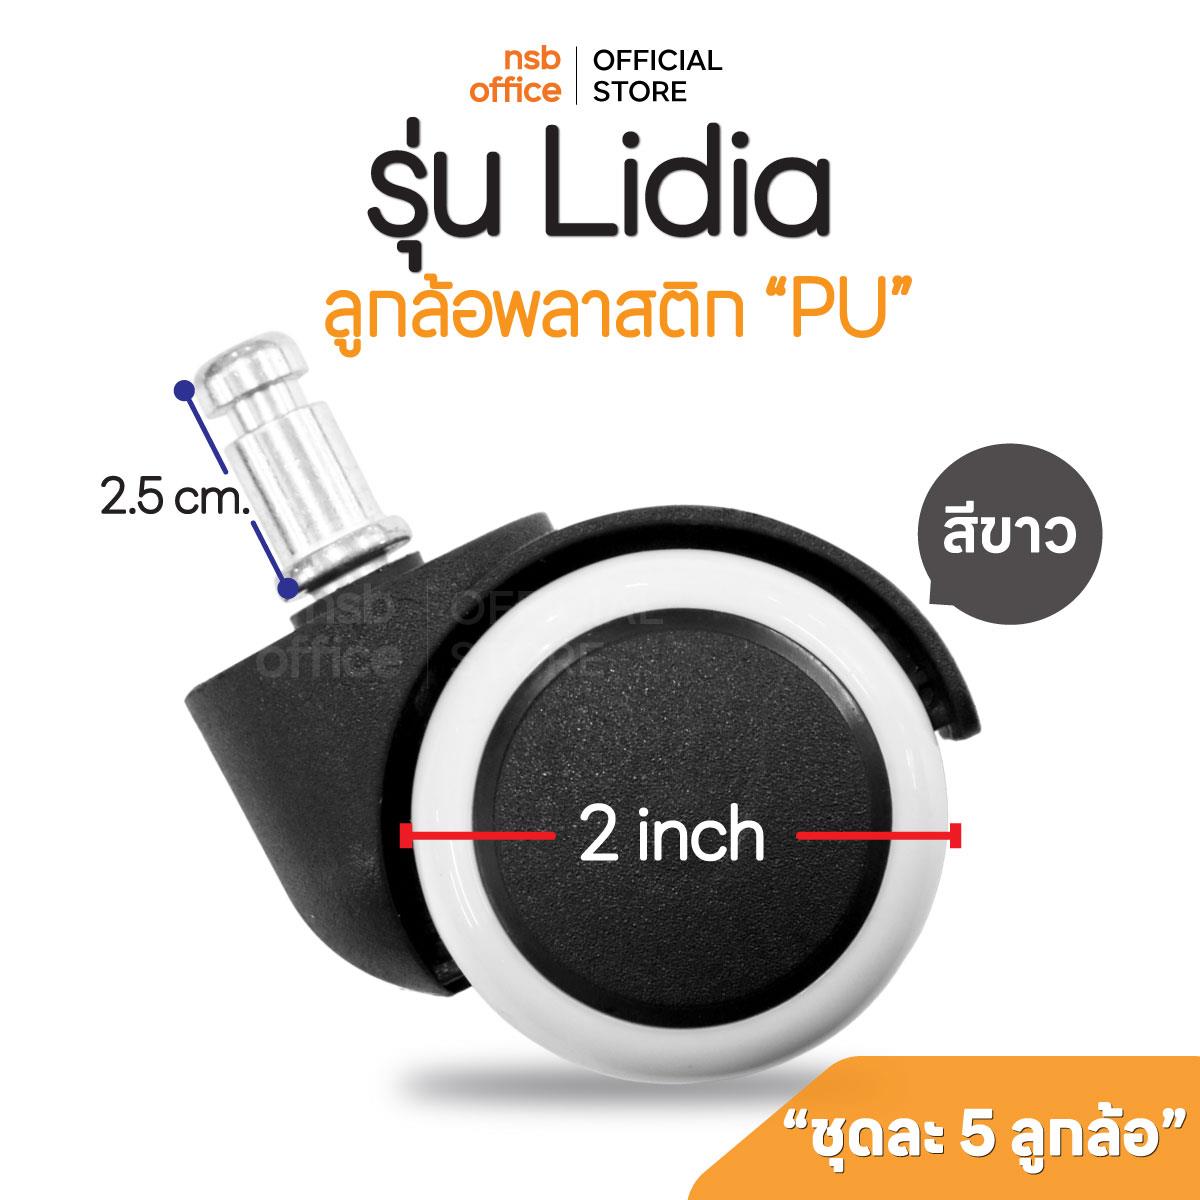 B27A003:ลูกล้อพลาสติกพียู (PU สีขาว) รุ่น Lidia (ลิเดีย) ขนาด 50 มม. 2 นิ้ว แบบเสียบ ชุดละ 5 ลูก